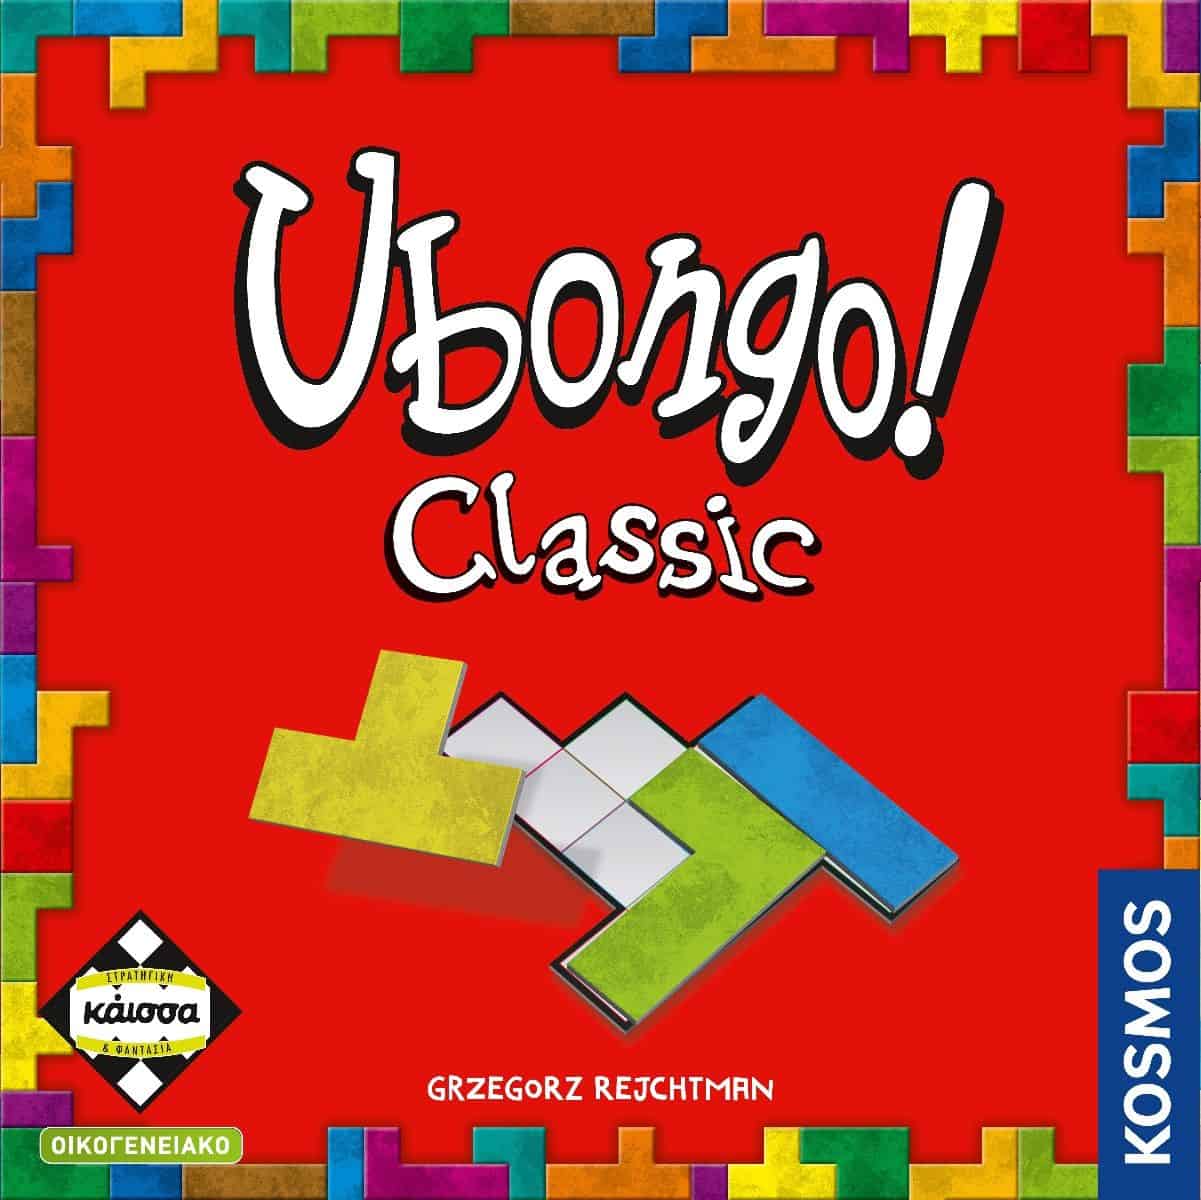 Επιτραπέζιο - Ubongo